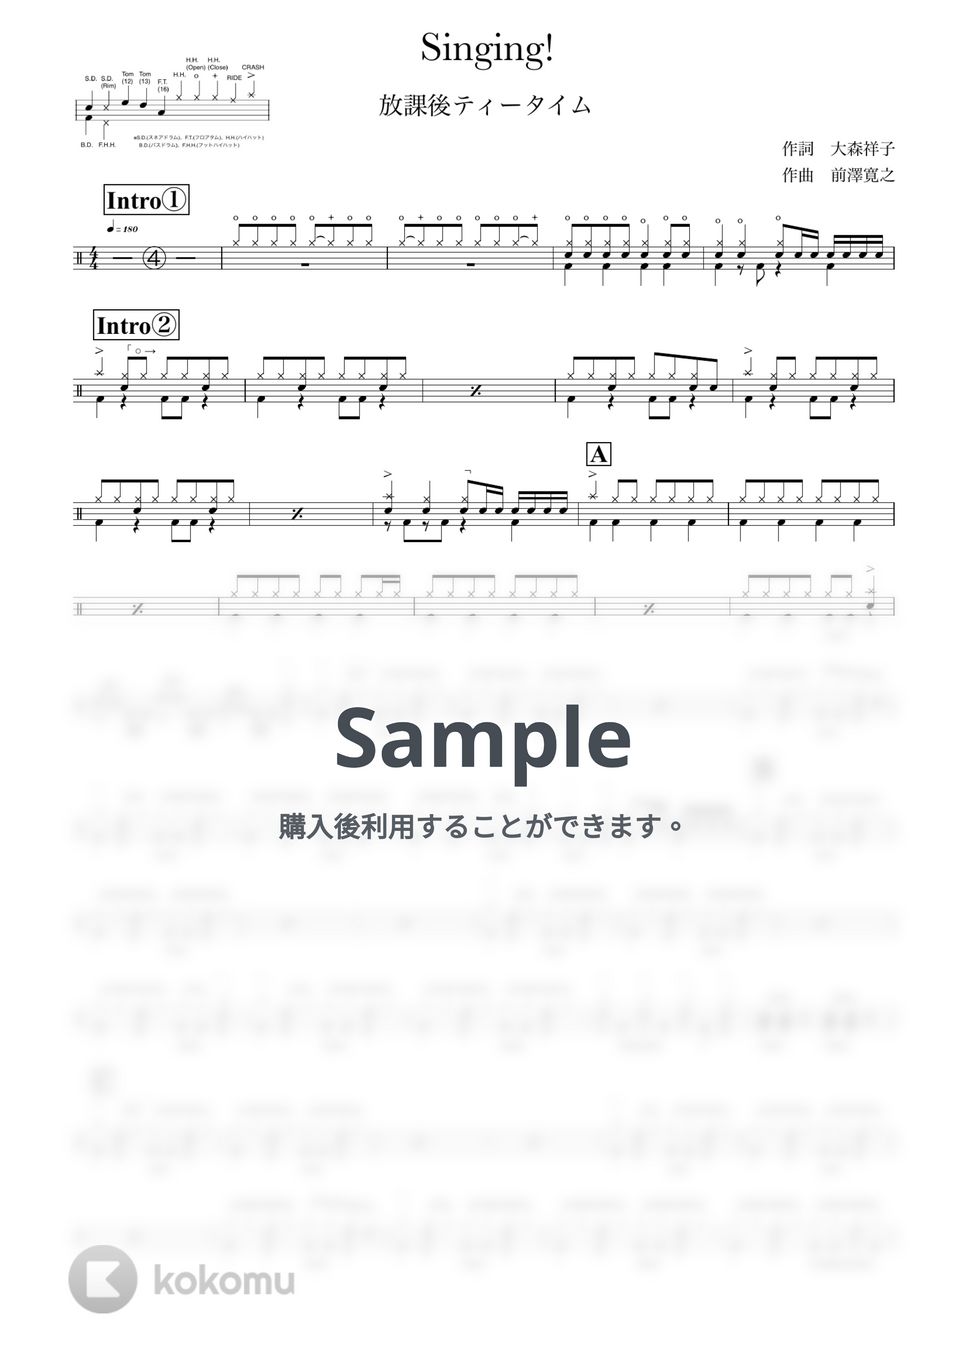 放課後ティータイム - Singing! by ONEDRUMS